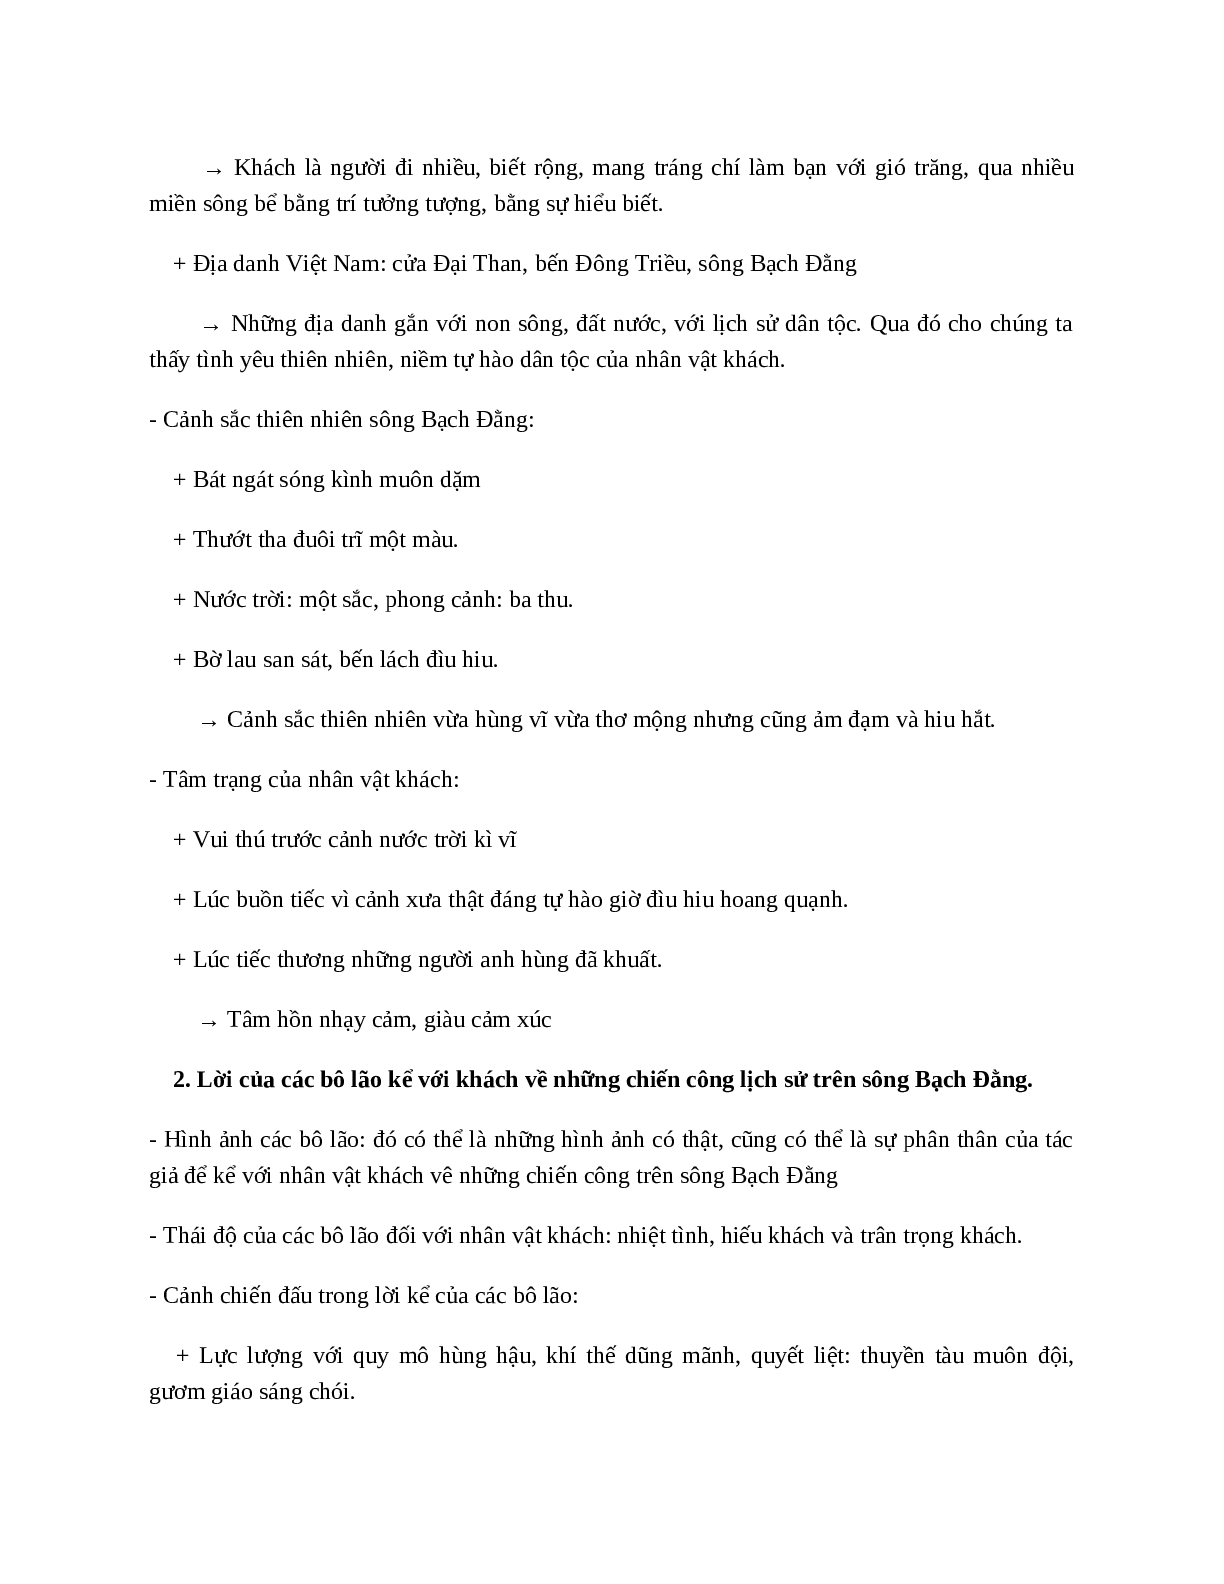 Phú sông Bạch Đằng (Trương Hán Siêu) - nội dung, dàn ý phân tích, bố cục, tóm tắt (trang 9)